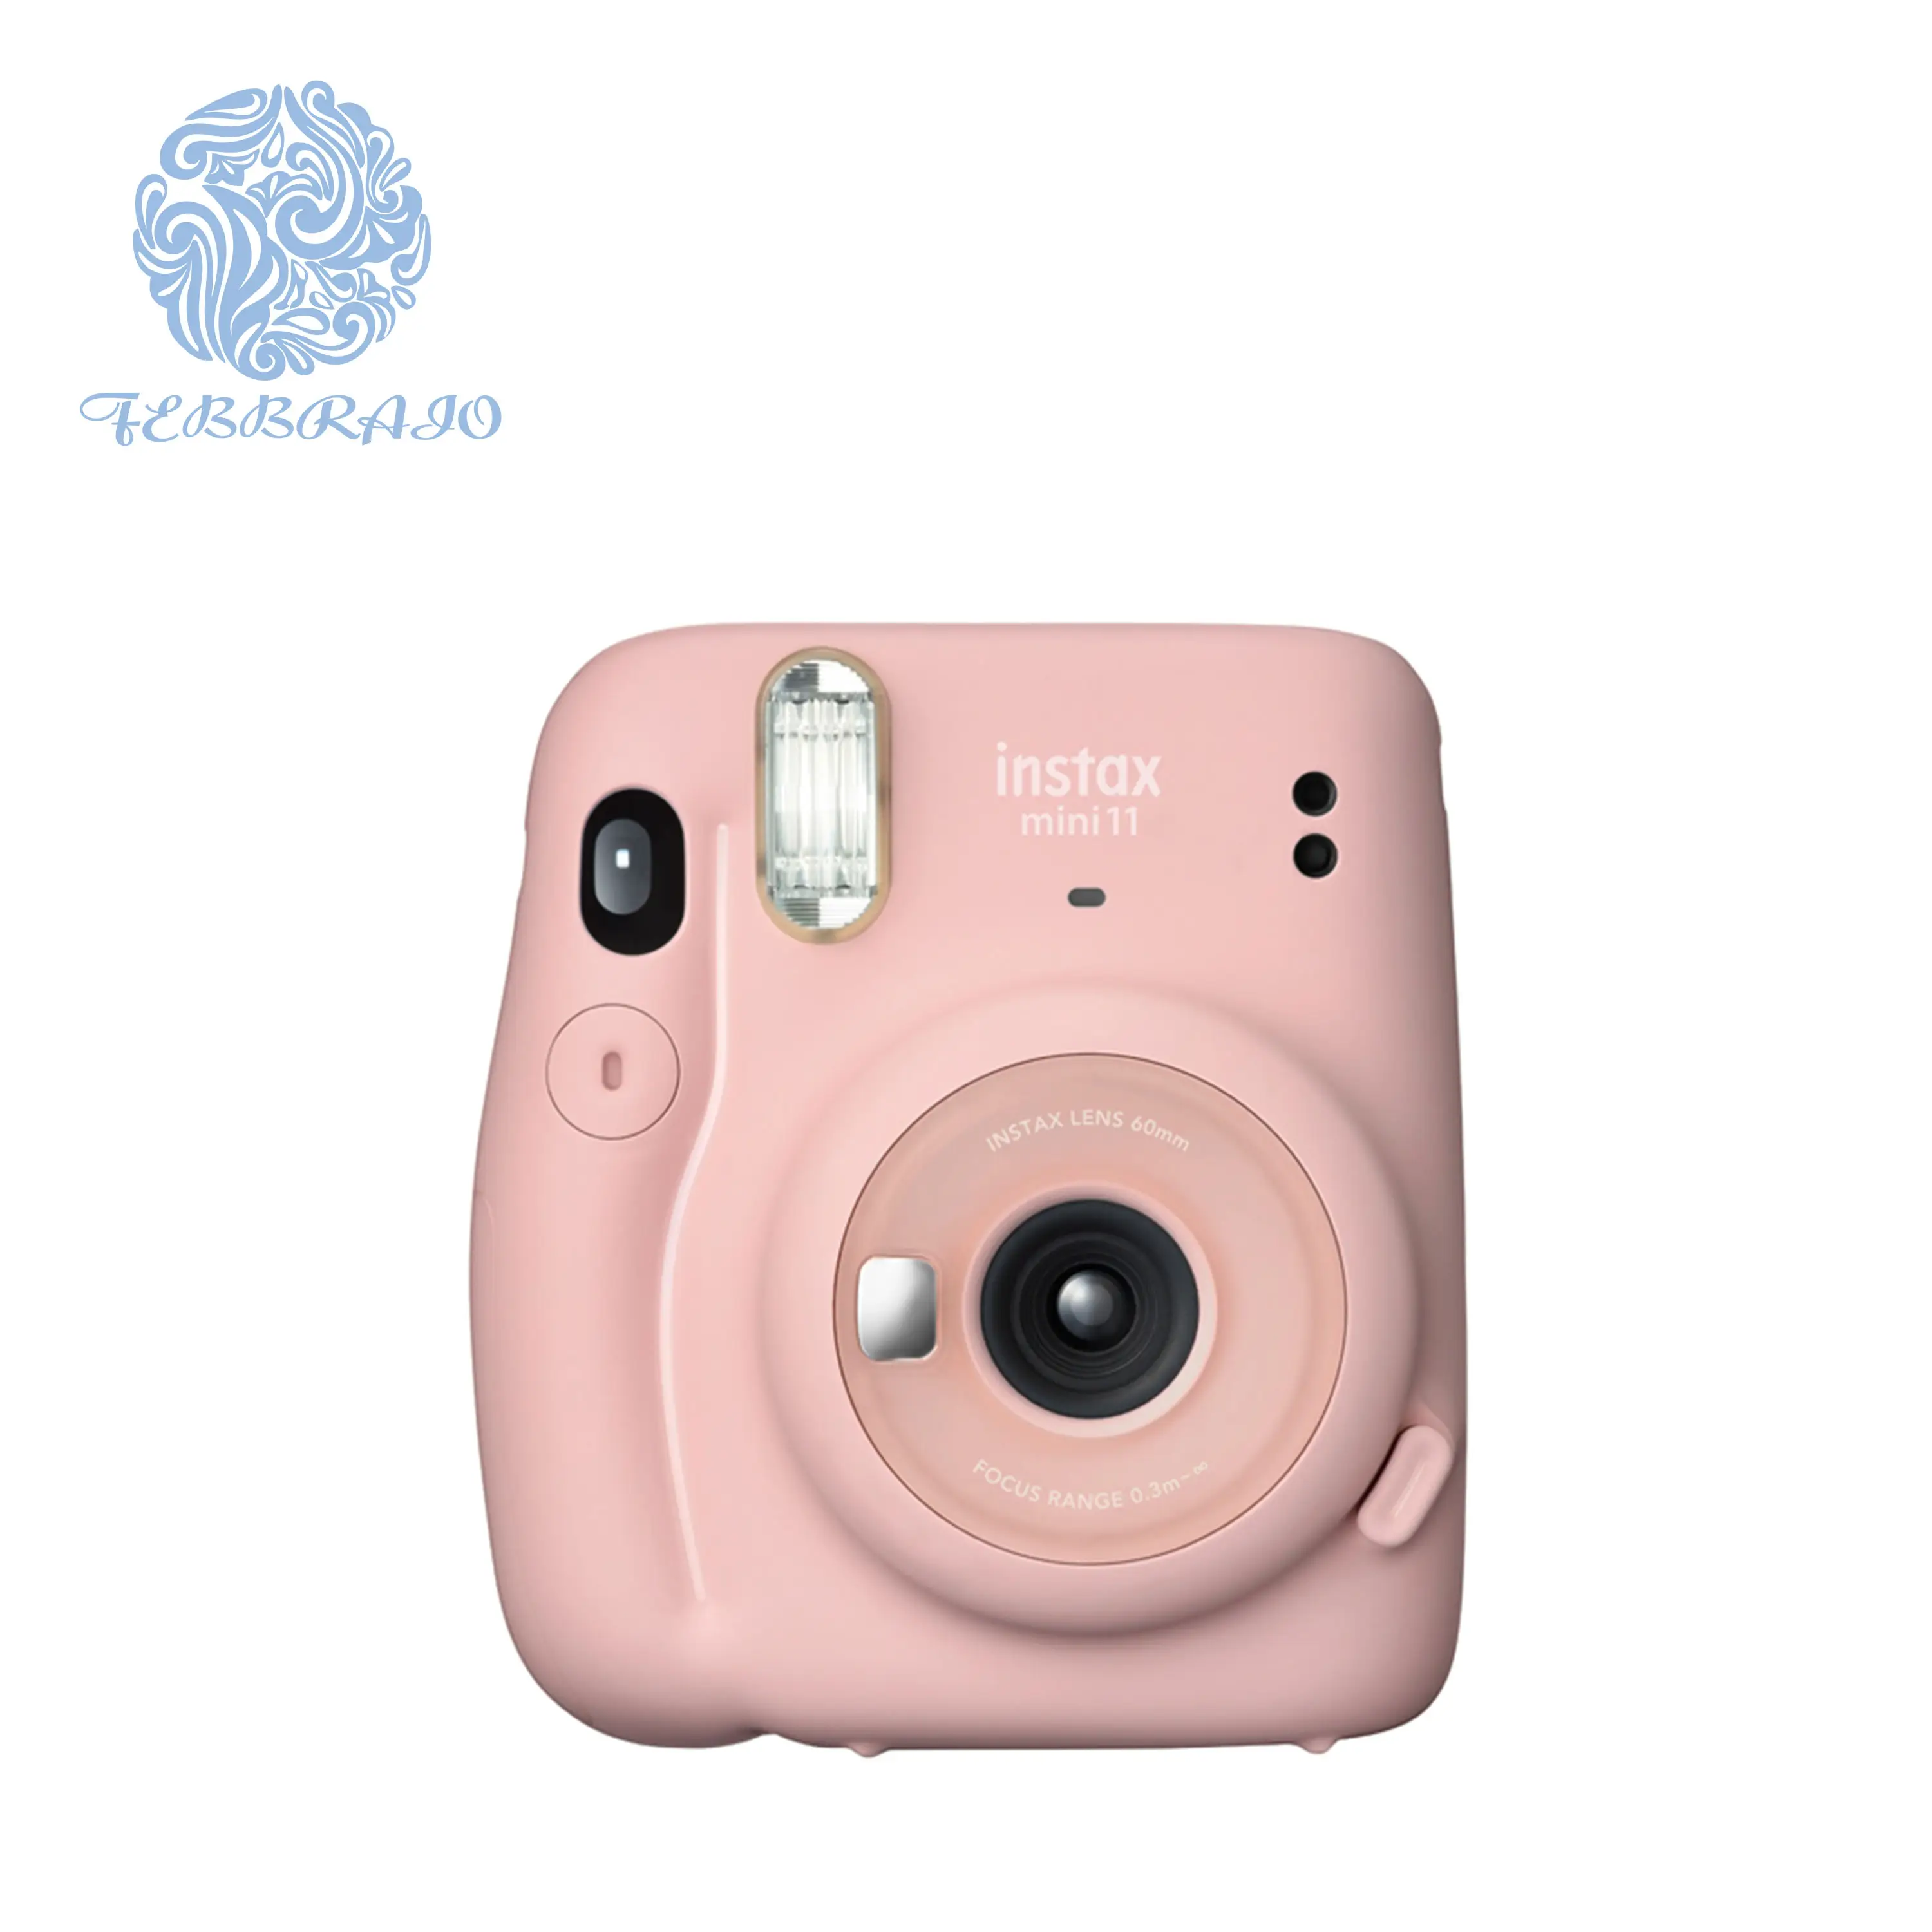 Kompakt anında fotoğraf kamerası Instax Mini 11 anlık kamera mavi/mor/gri/beyaz/pembe renk